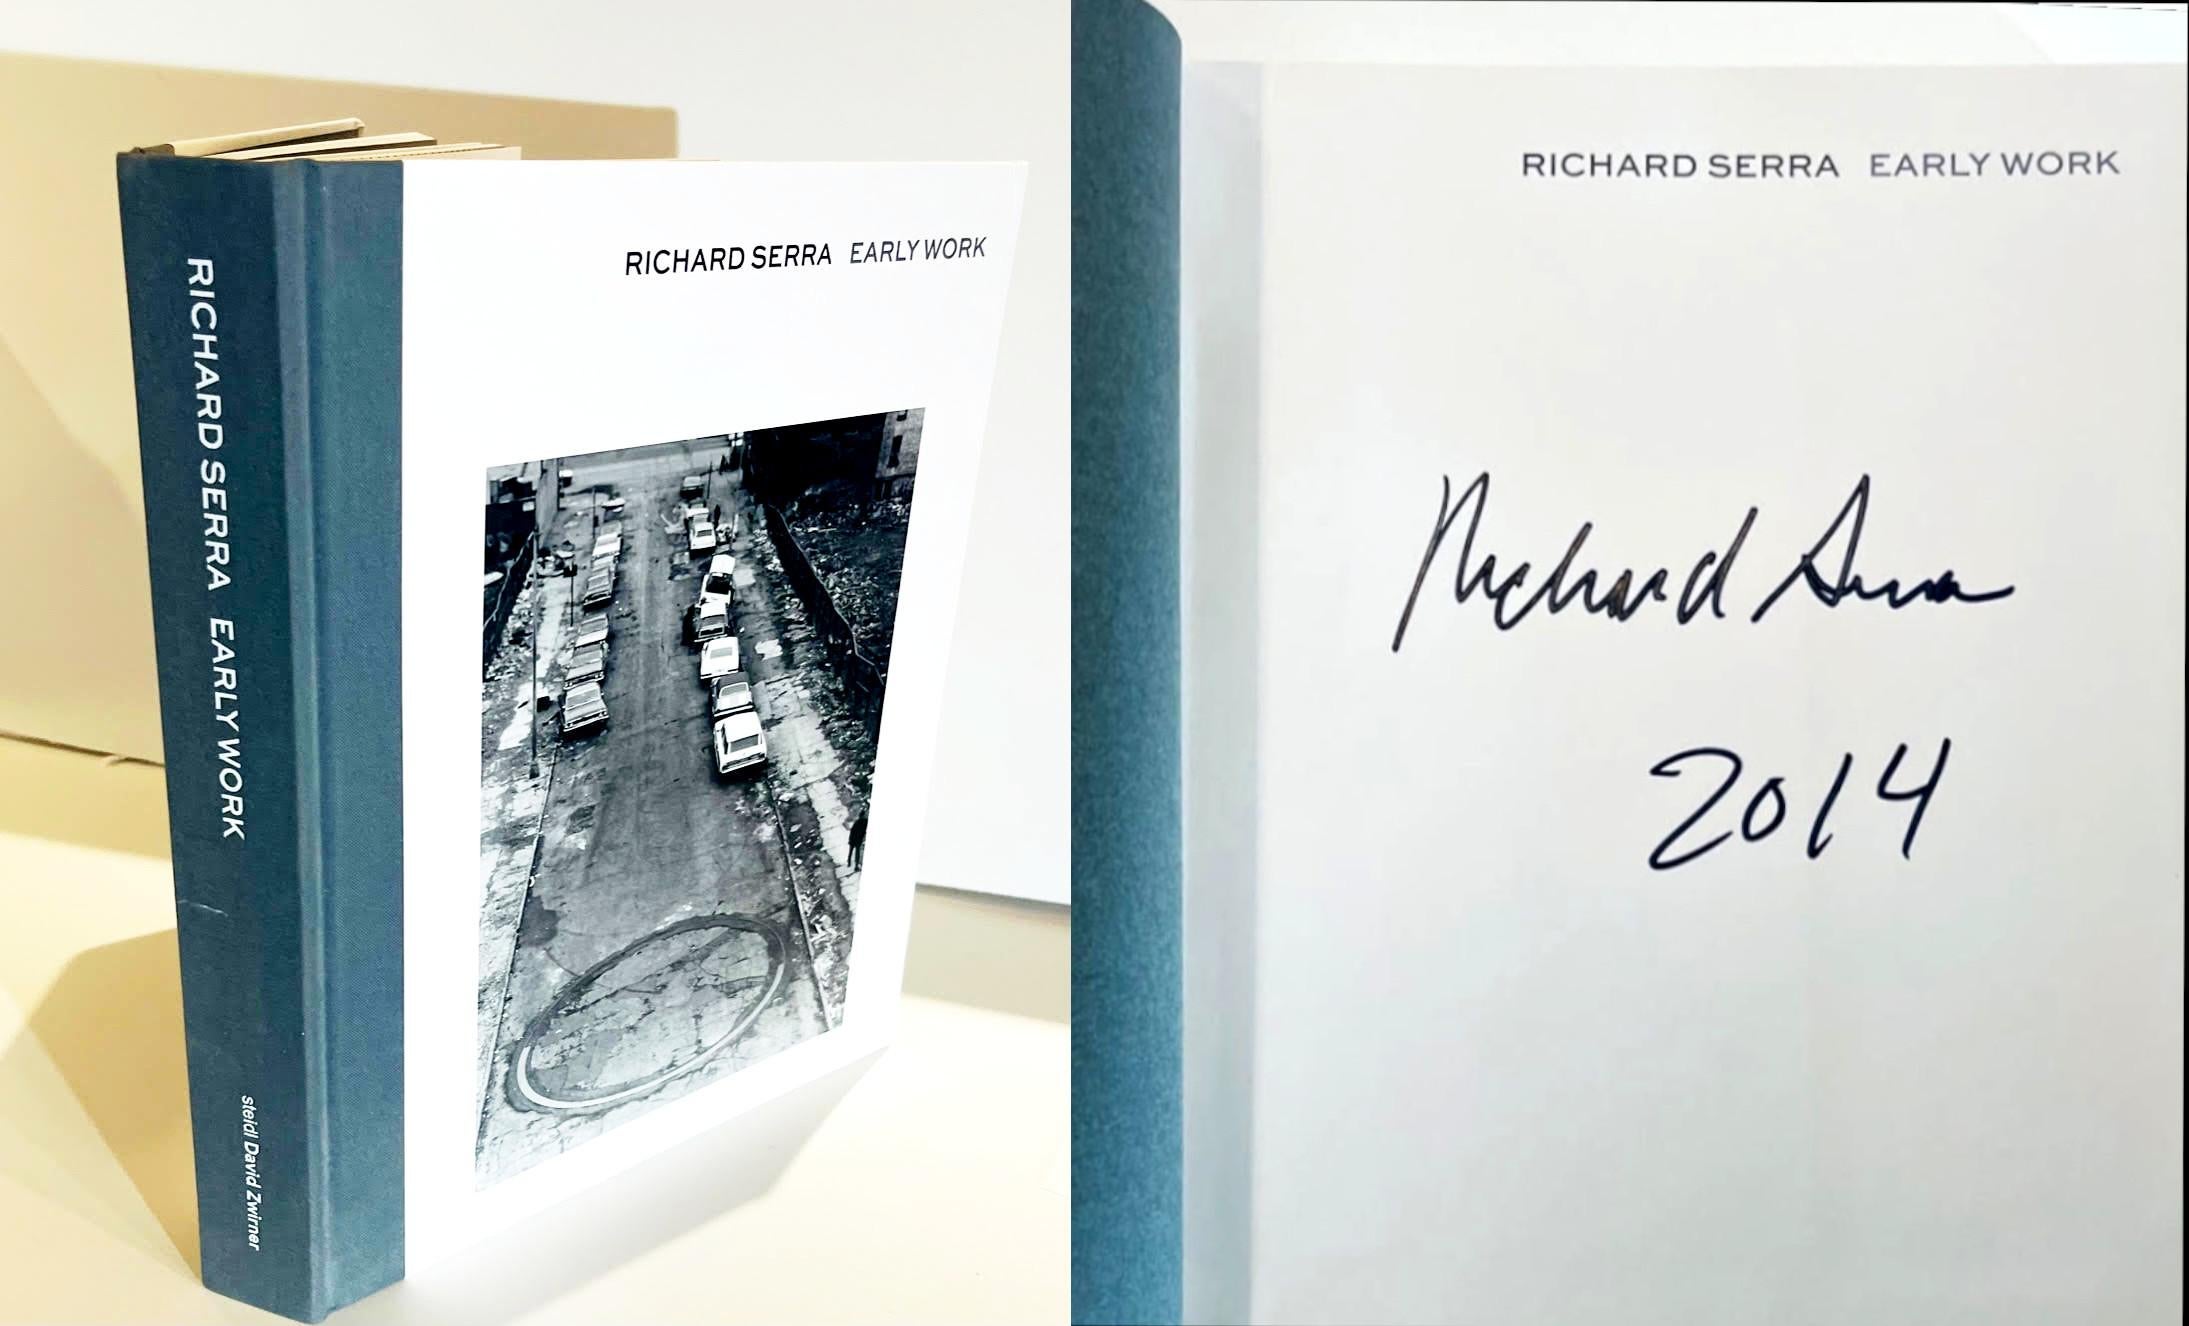 Richard Serra Early Work (signé et daté à la main par Richard Serra), 2013
Monographie reliée sans jaquette telle que publiée (signée et datée à la main en 2014 par Richard Serra).
 Signé à la main et daté 2014 par Richard Serra sur la page de